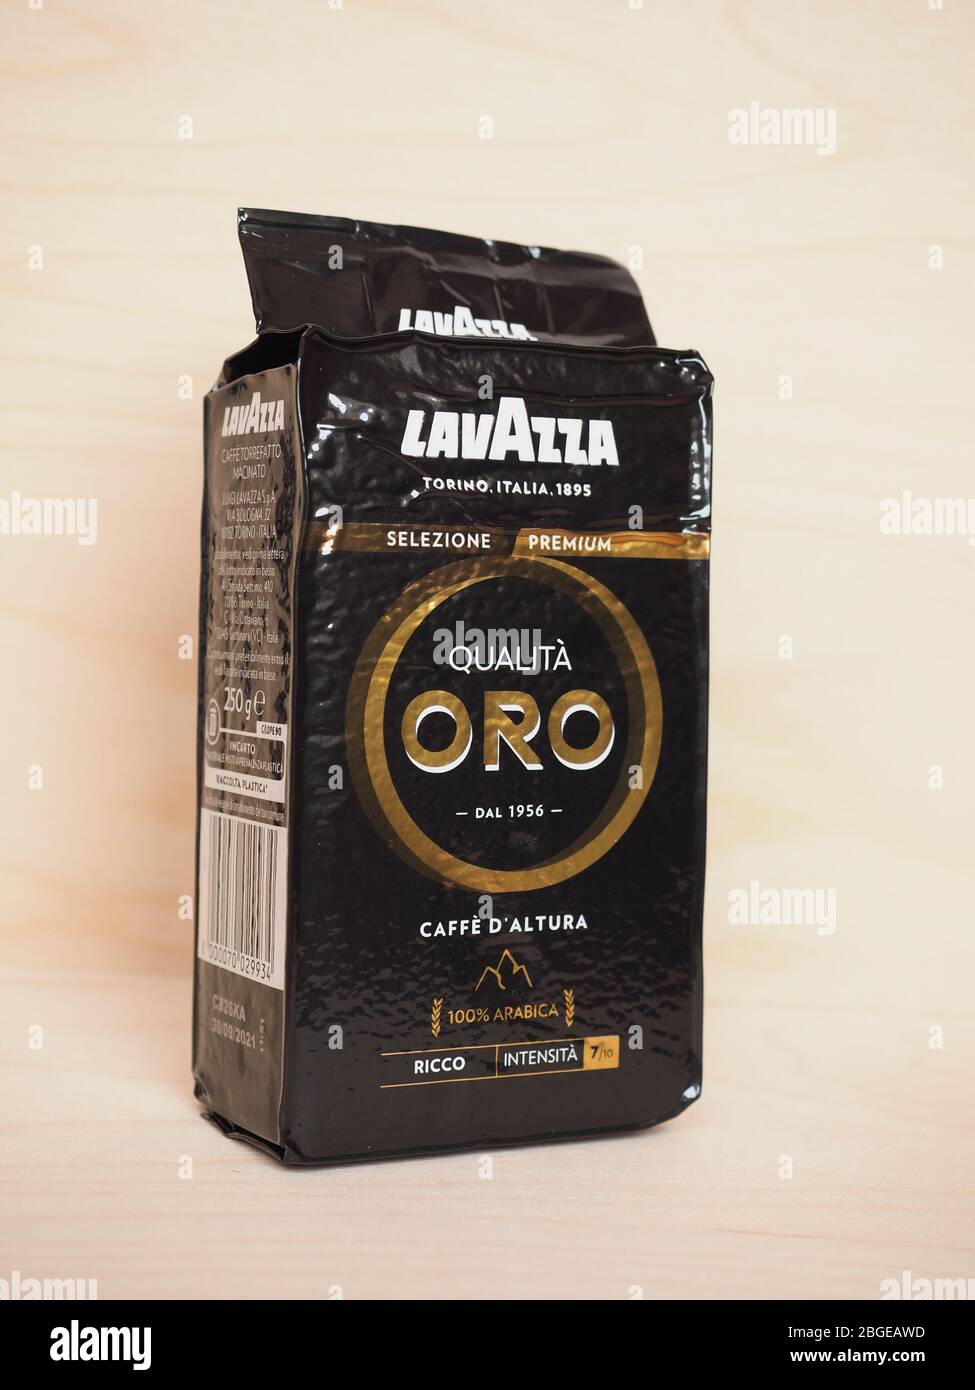 Lavazza Qualità Oro Premium Selection Gold Espresso | Coffee Ground Tin by  Lavazza - 8 oz.